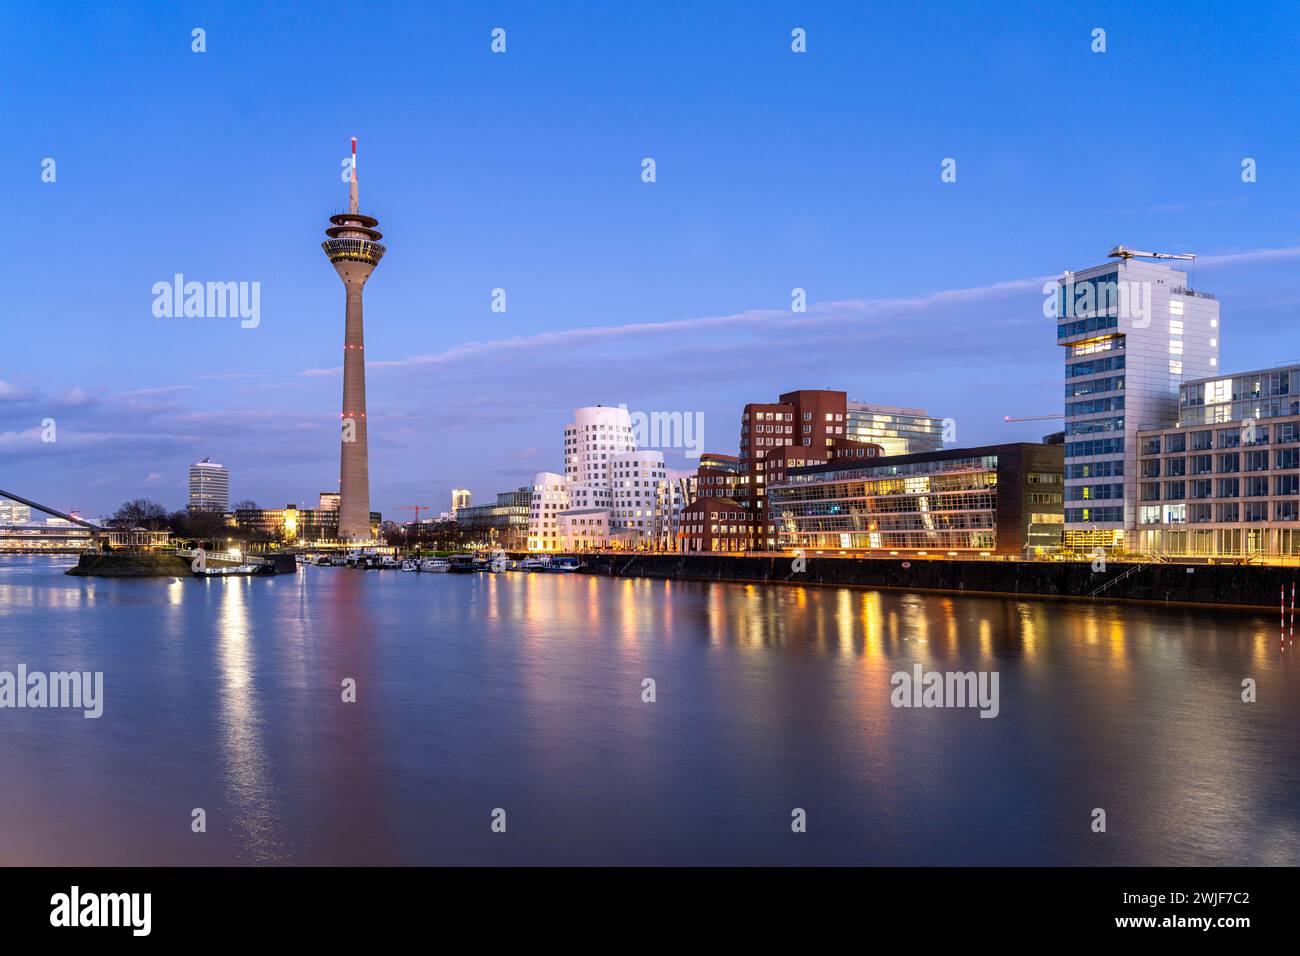 Gehry-Bauten - Neuer Zollhof am Medienhafen und der Rheinturm in Düsseldorf in der Abenddämmerung, Nordrhein-Westfalen, Deutschland | The Gehry Buil Banque D'Images